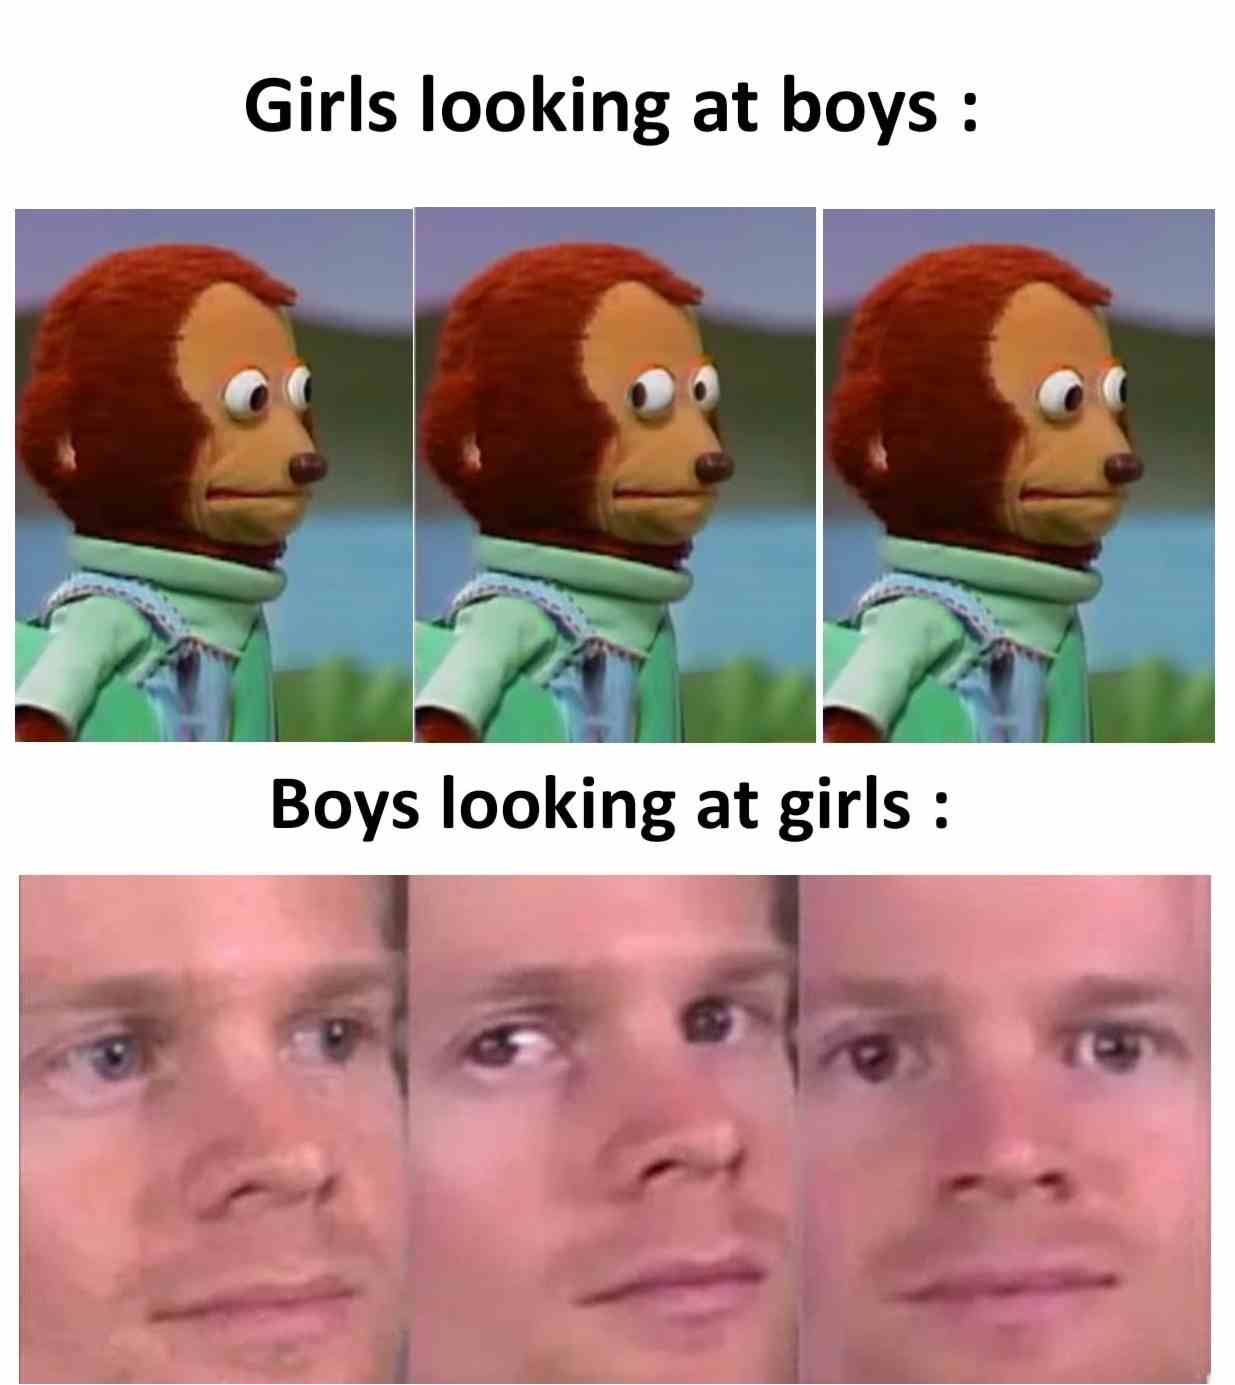 Girls looking at boys Vs Boys looking at girls